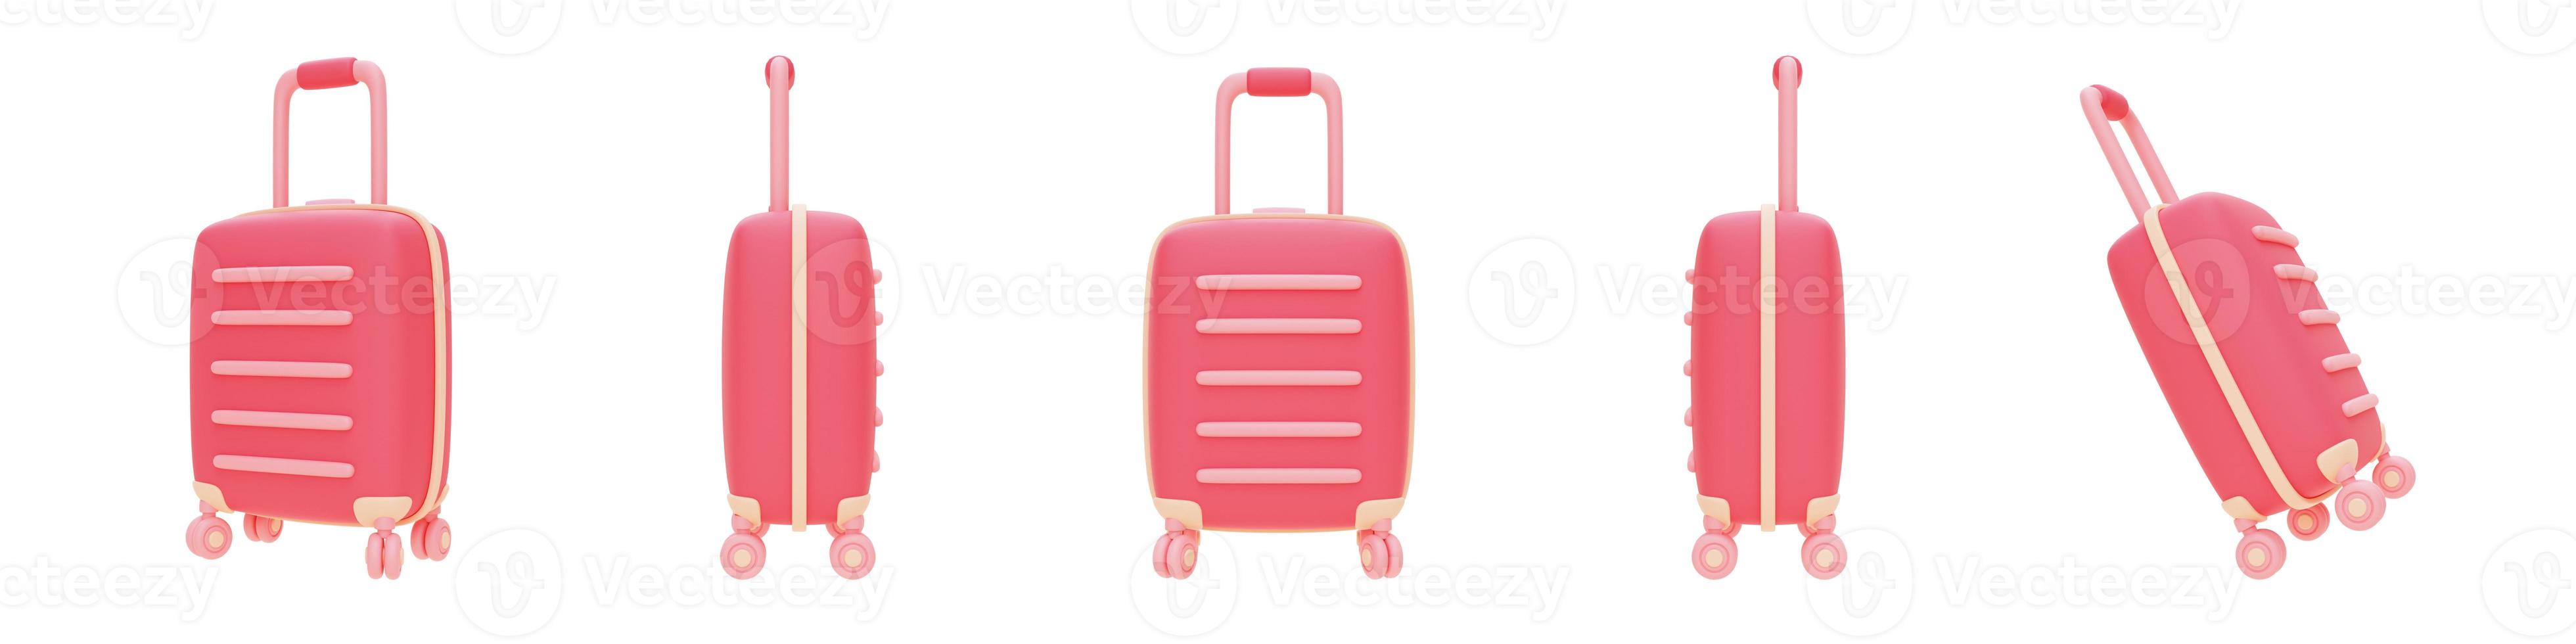 conjunto de mala rosa sobre fundo claro, conceito de venda de dia dos namorados, renderização style.3d mínima. foto